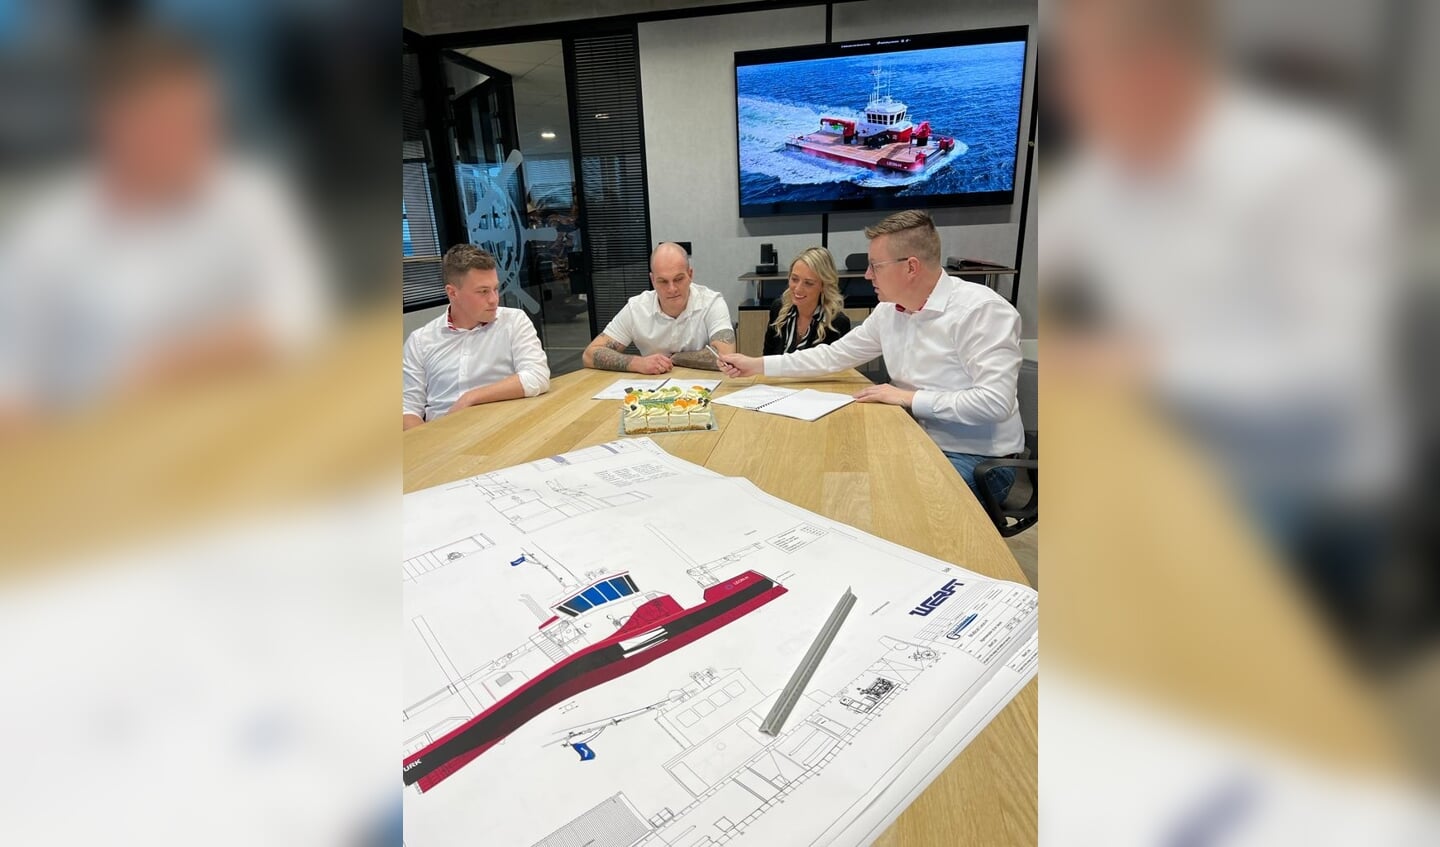 De ondertekening voor het allereerste werkschip van Werft Shipbuilding vond vorige week plaats. Op de foto (vlnr): Jan Cees Kater (Werft), Pieter en Claudia Hoefnagel (TB Waterwerk) en Pieter Pruiksma (Werft).